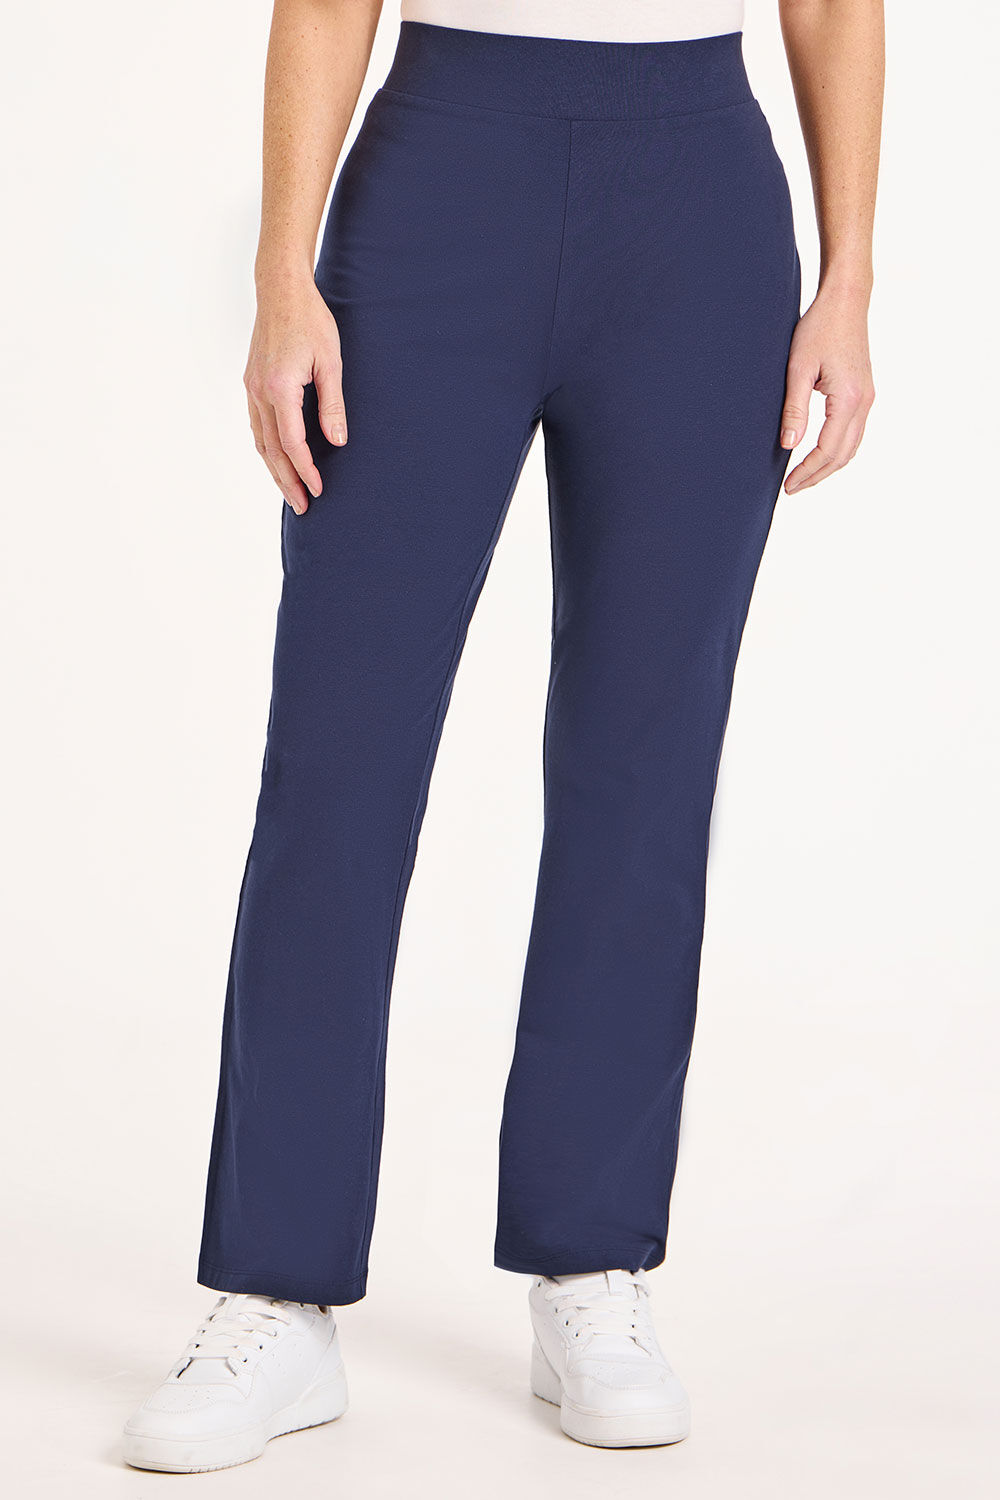 Bonmarche Navy Short Yoga Pants - Blue - Size 14